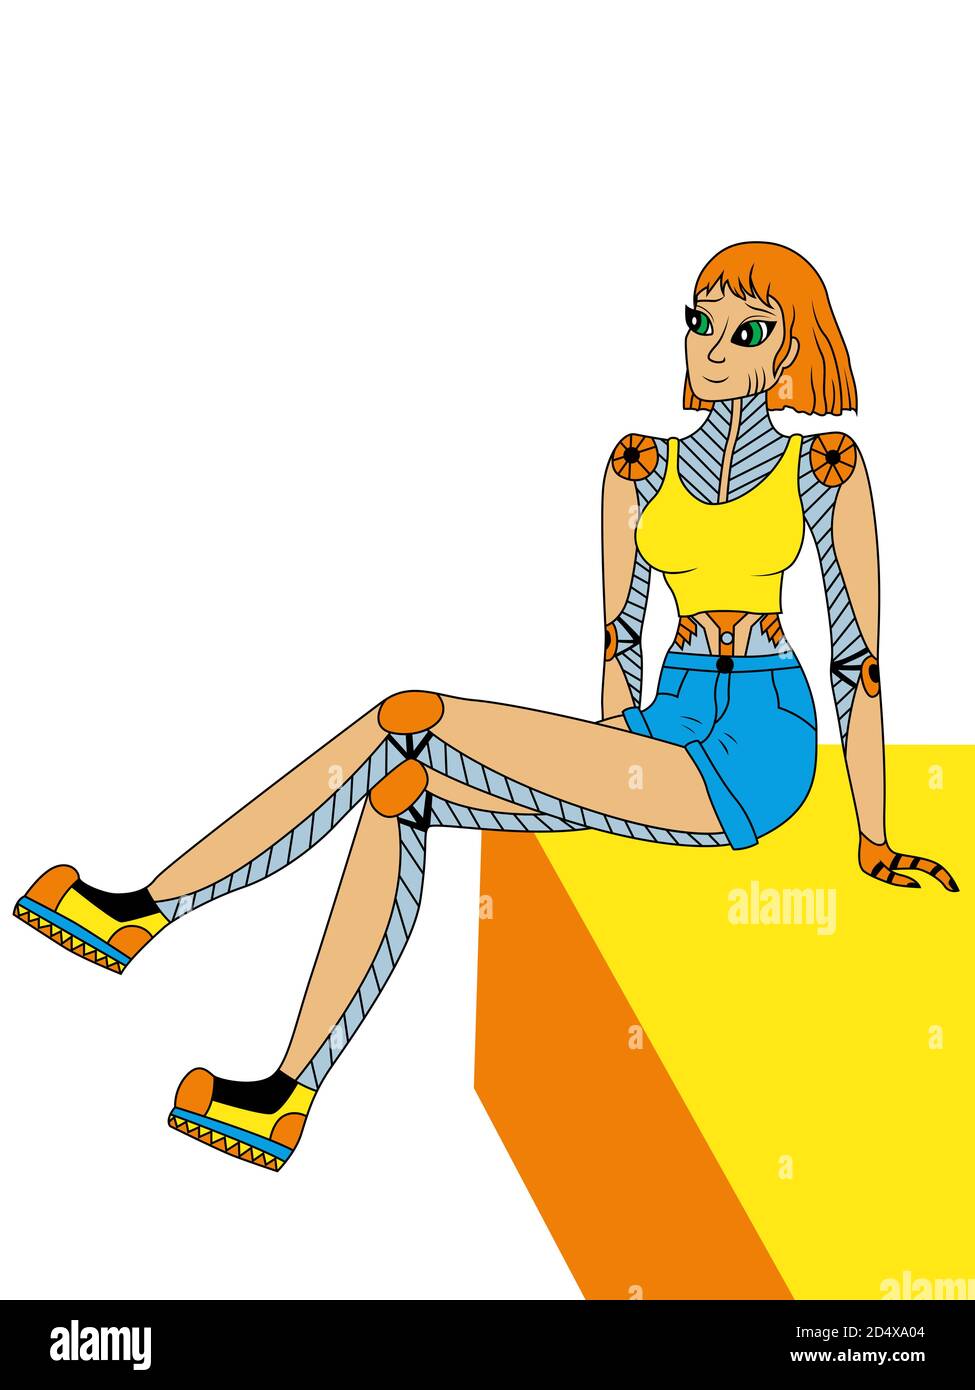 Fantastische Cartoon Roboter Mädchen in Sommerkleidung in gelb und blau, Vektor als Kinderzeichnung gemacht Stock Vektor